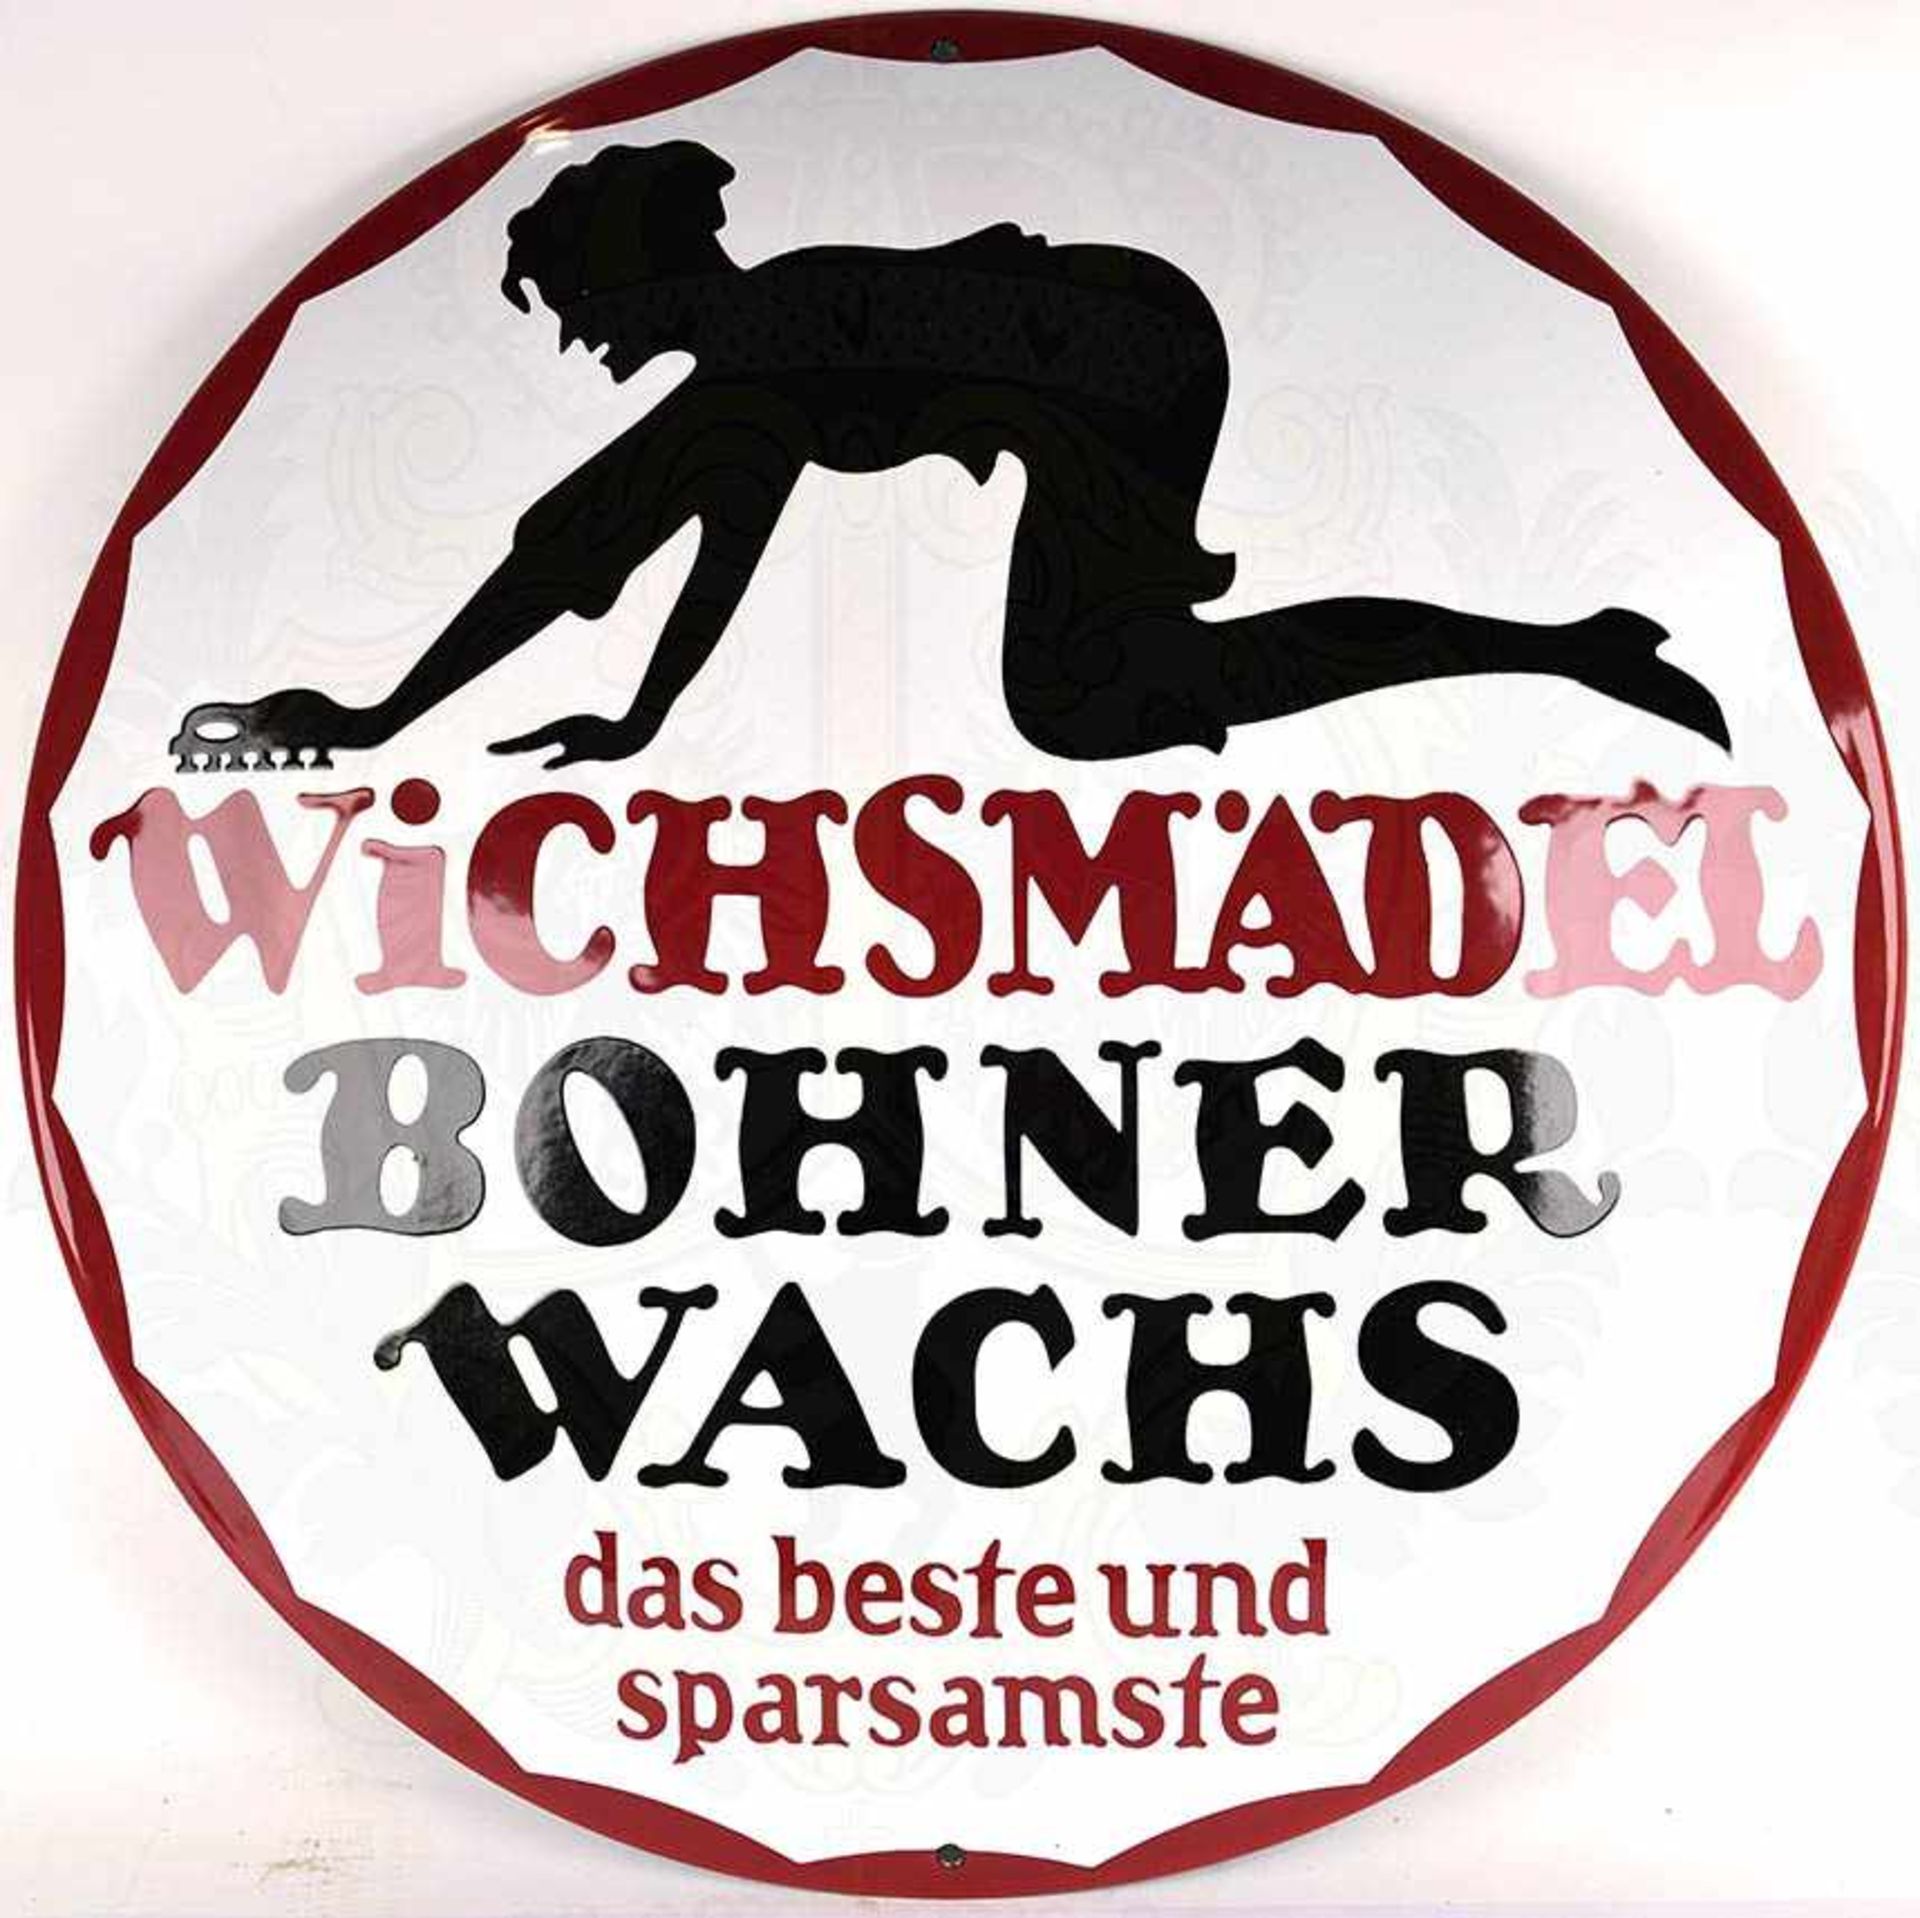 WERBESCHILD „WICHSMÄDEL“, „Bohner-Wachs, das beste und sparsamste“, Eisenblech, rund, schwarz/weiß/